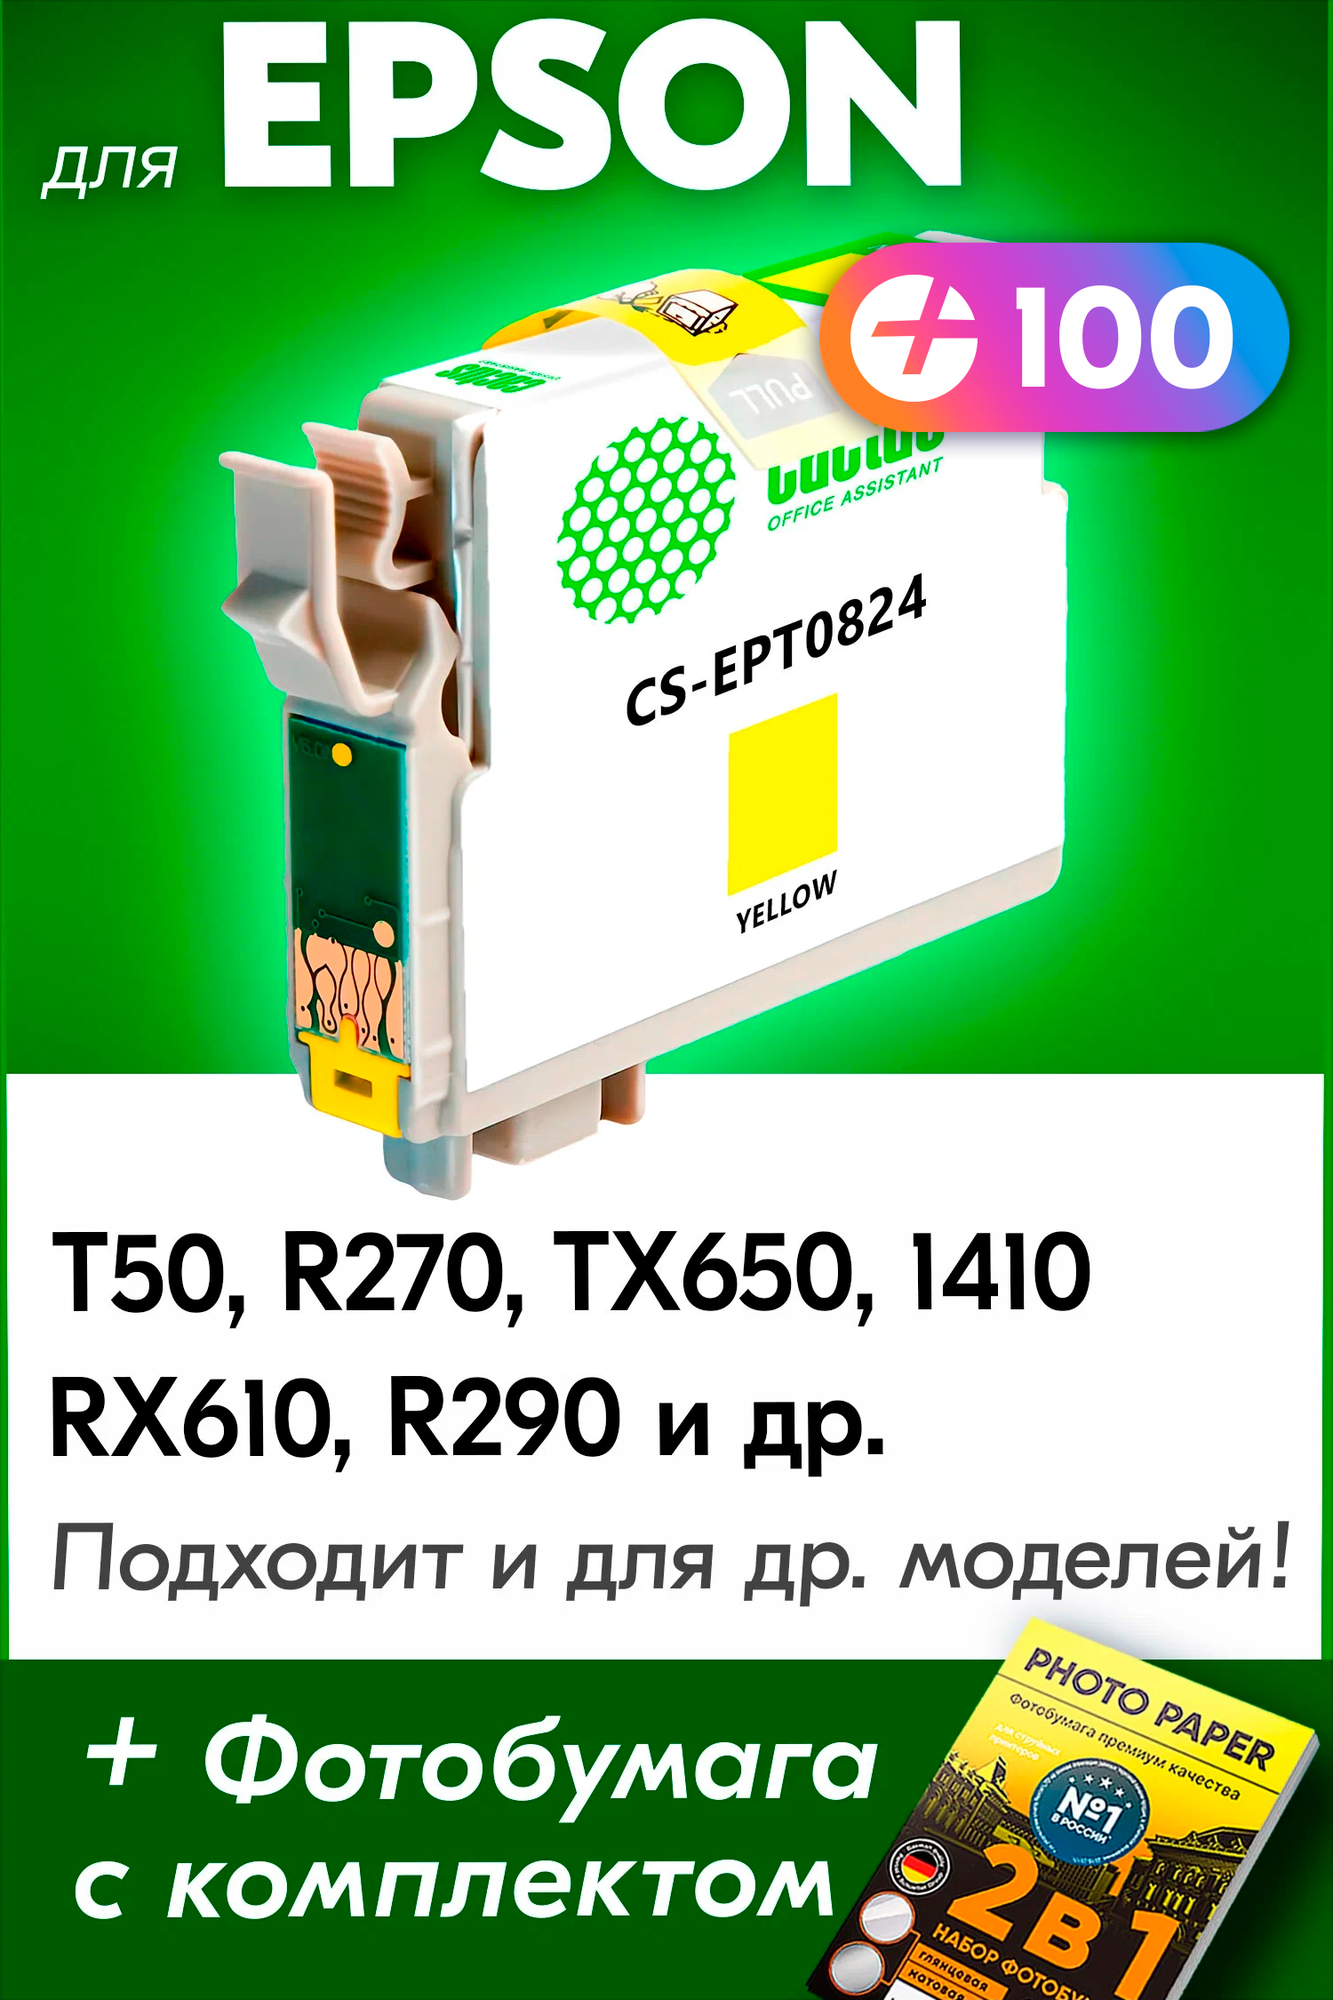 Картридж для Epson T0824, Epson Stylus Photo T50, R270, TX650, 1410, RX610, R290 с чернилами (с краской) для струйного принтера, Желтый (Yellow)